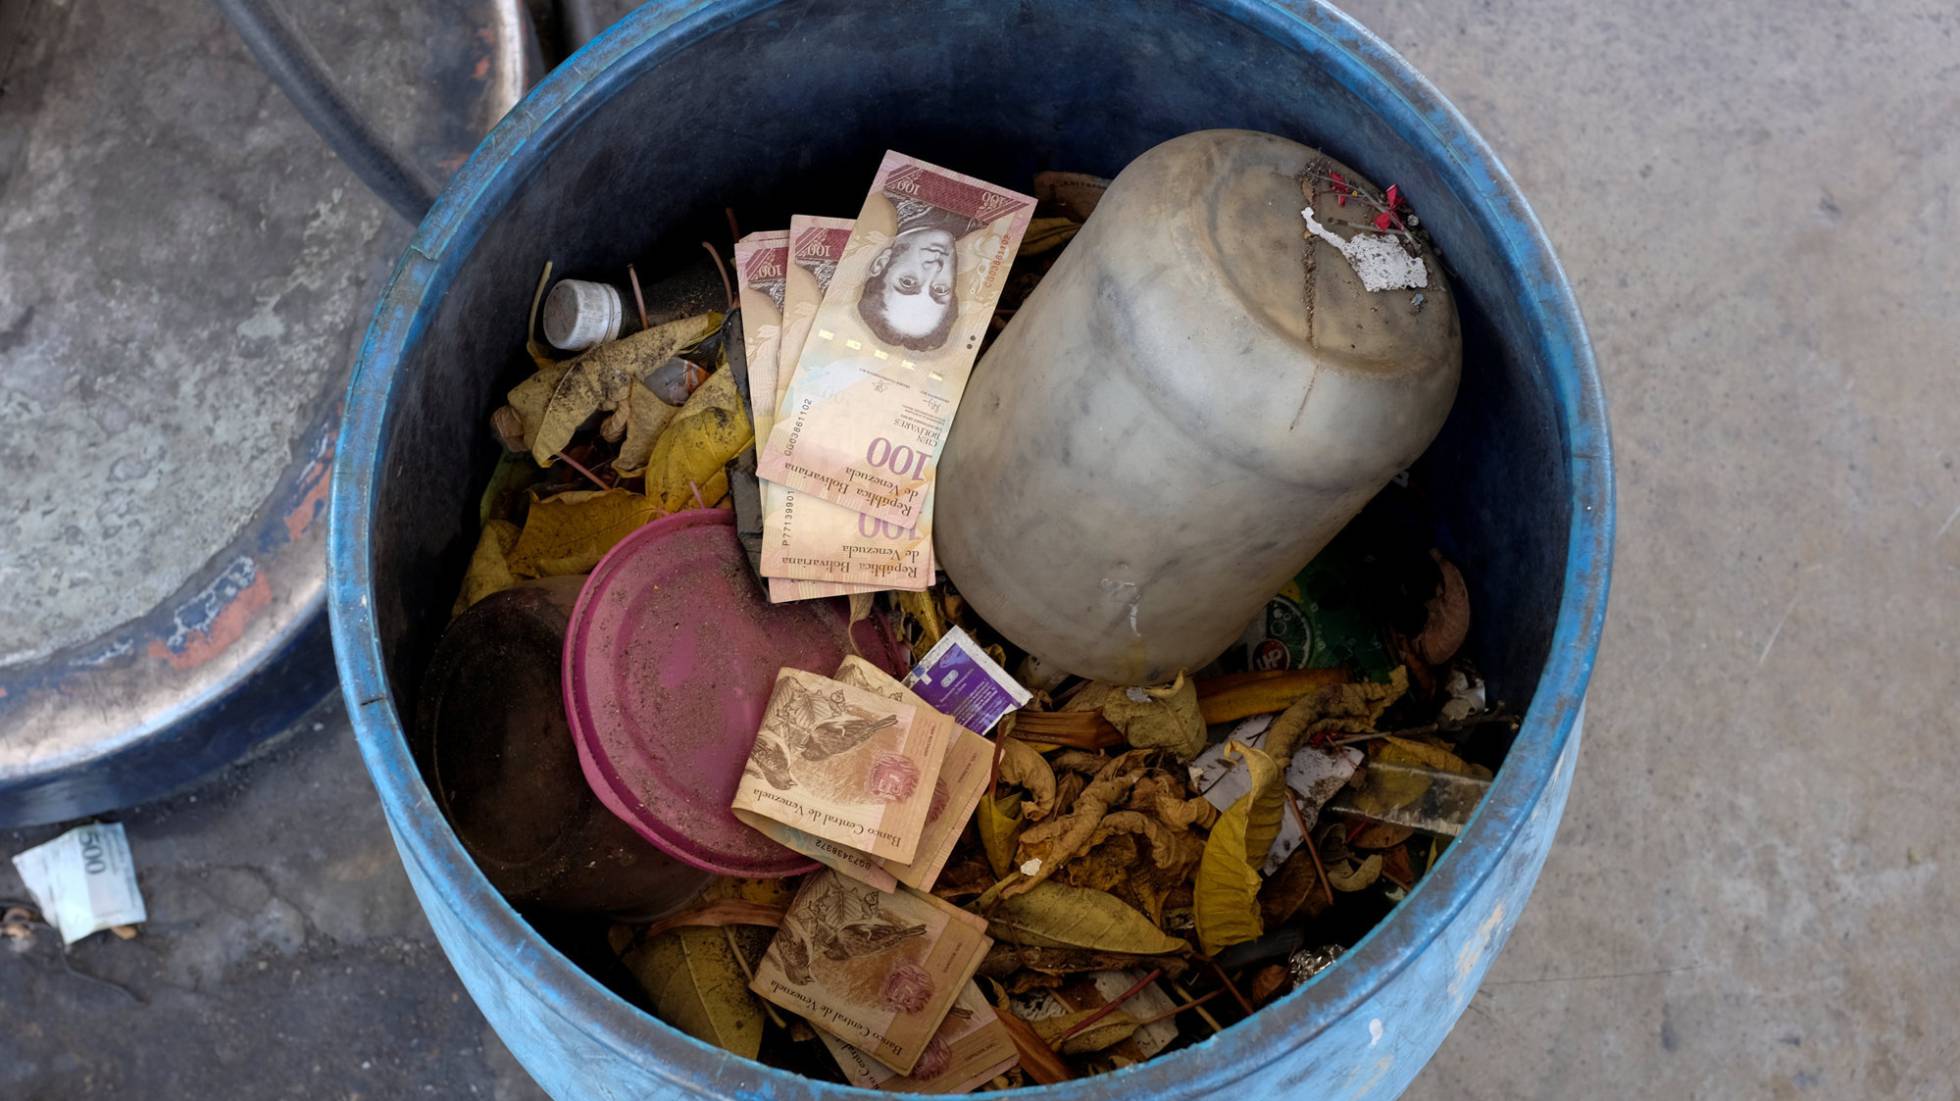 L'inflazione ha trasformato la valuta nazionale in carta-straccia. Banconote di bolivares nel cestino della spazzatura. (REUTERS/MARCO BELLO)